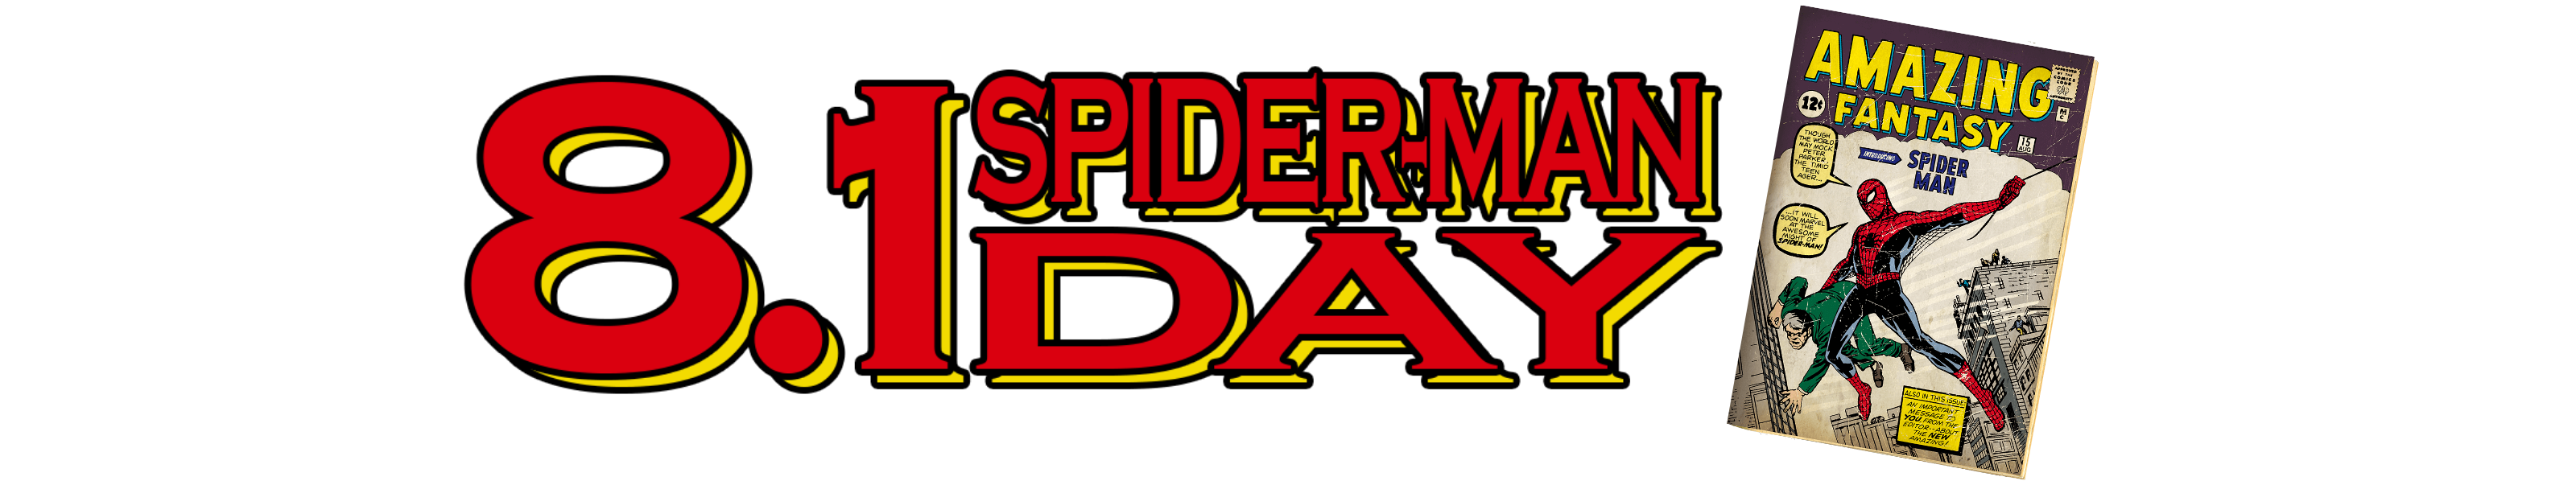 8.1 SPIDER-MAN DAY